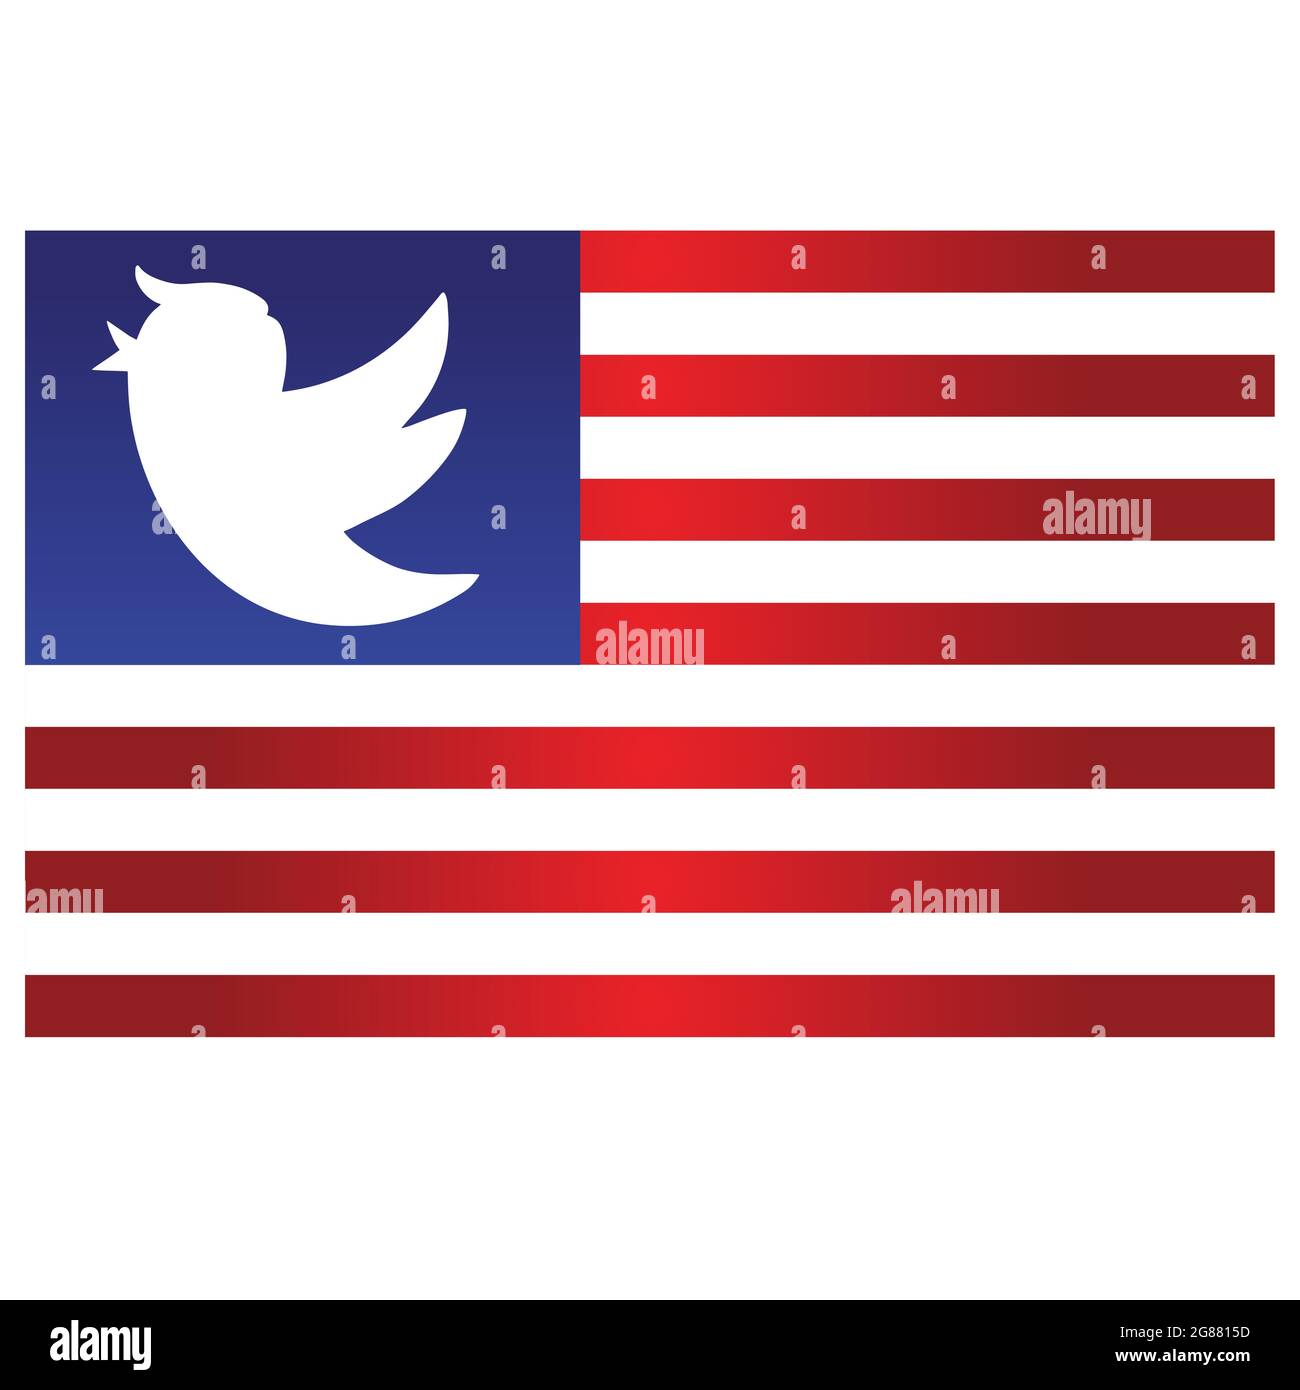 Trump Bird Symbol auf blau und rot Streifen Flagge Zeichen Hintergrund. Vektorgrafik Cartoon Illustration Stock Vektor